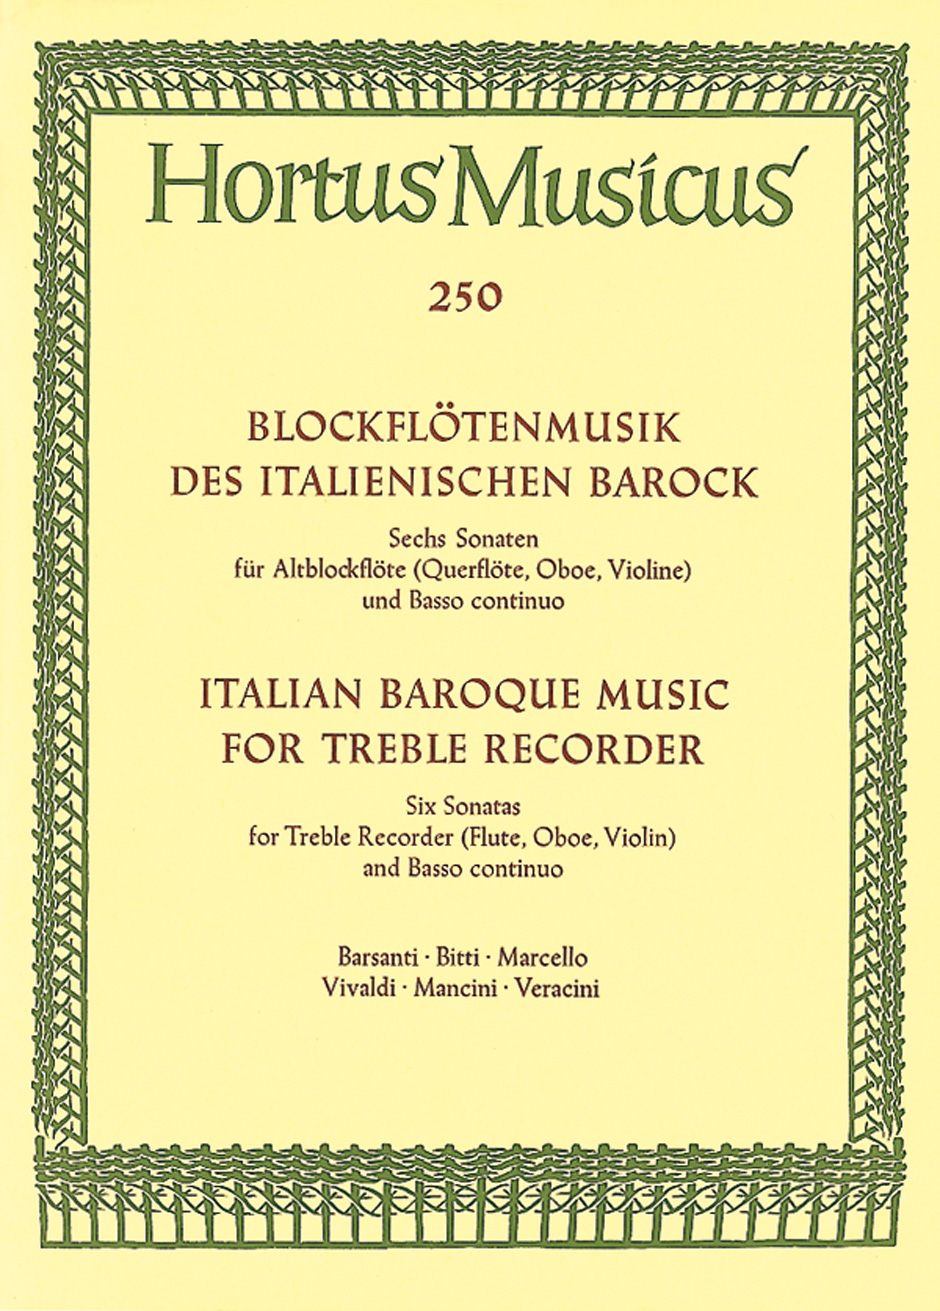 Blockflötensonaten des italienischen Barock: Recorder: Instrumental Album